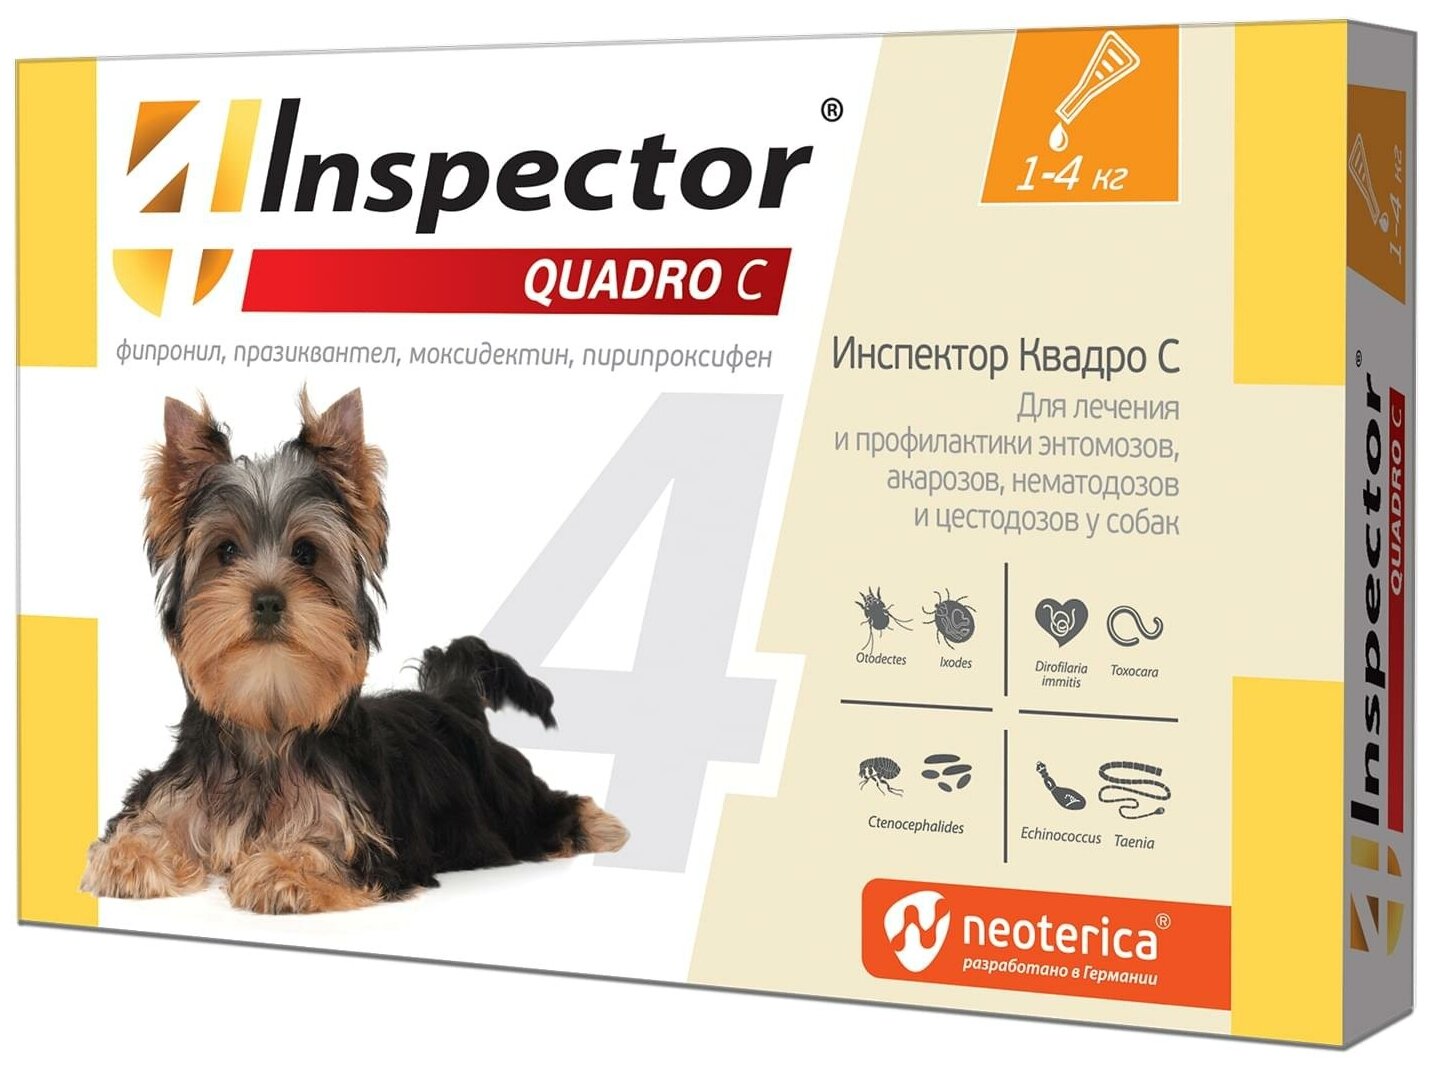 Inspector QUADRO капли от блох клещей гельминтов для собак 1-4 кг